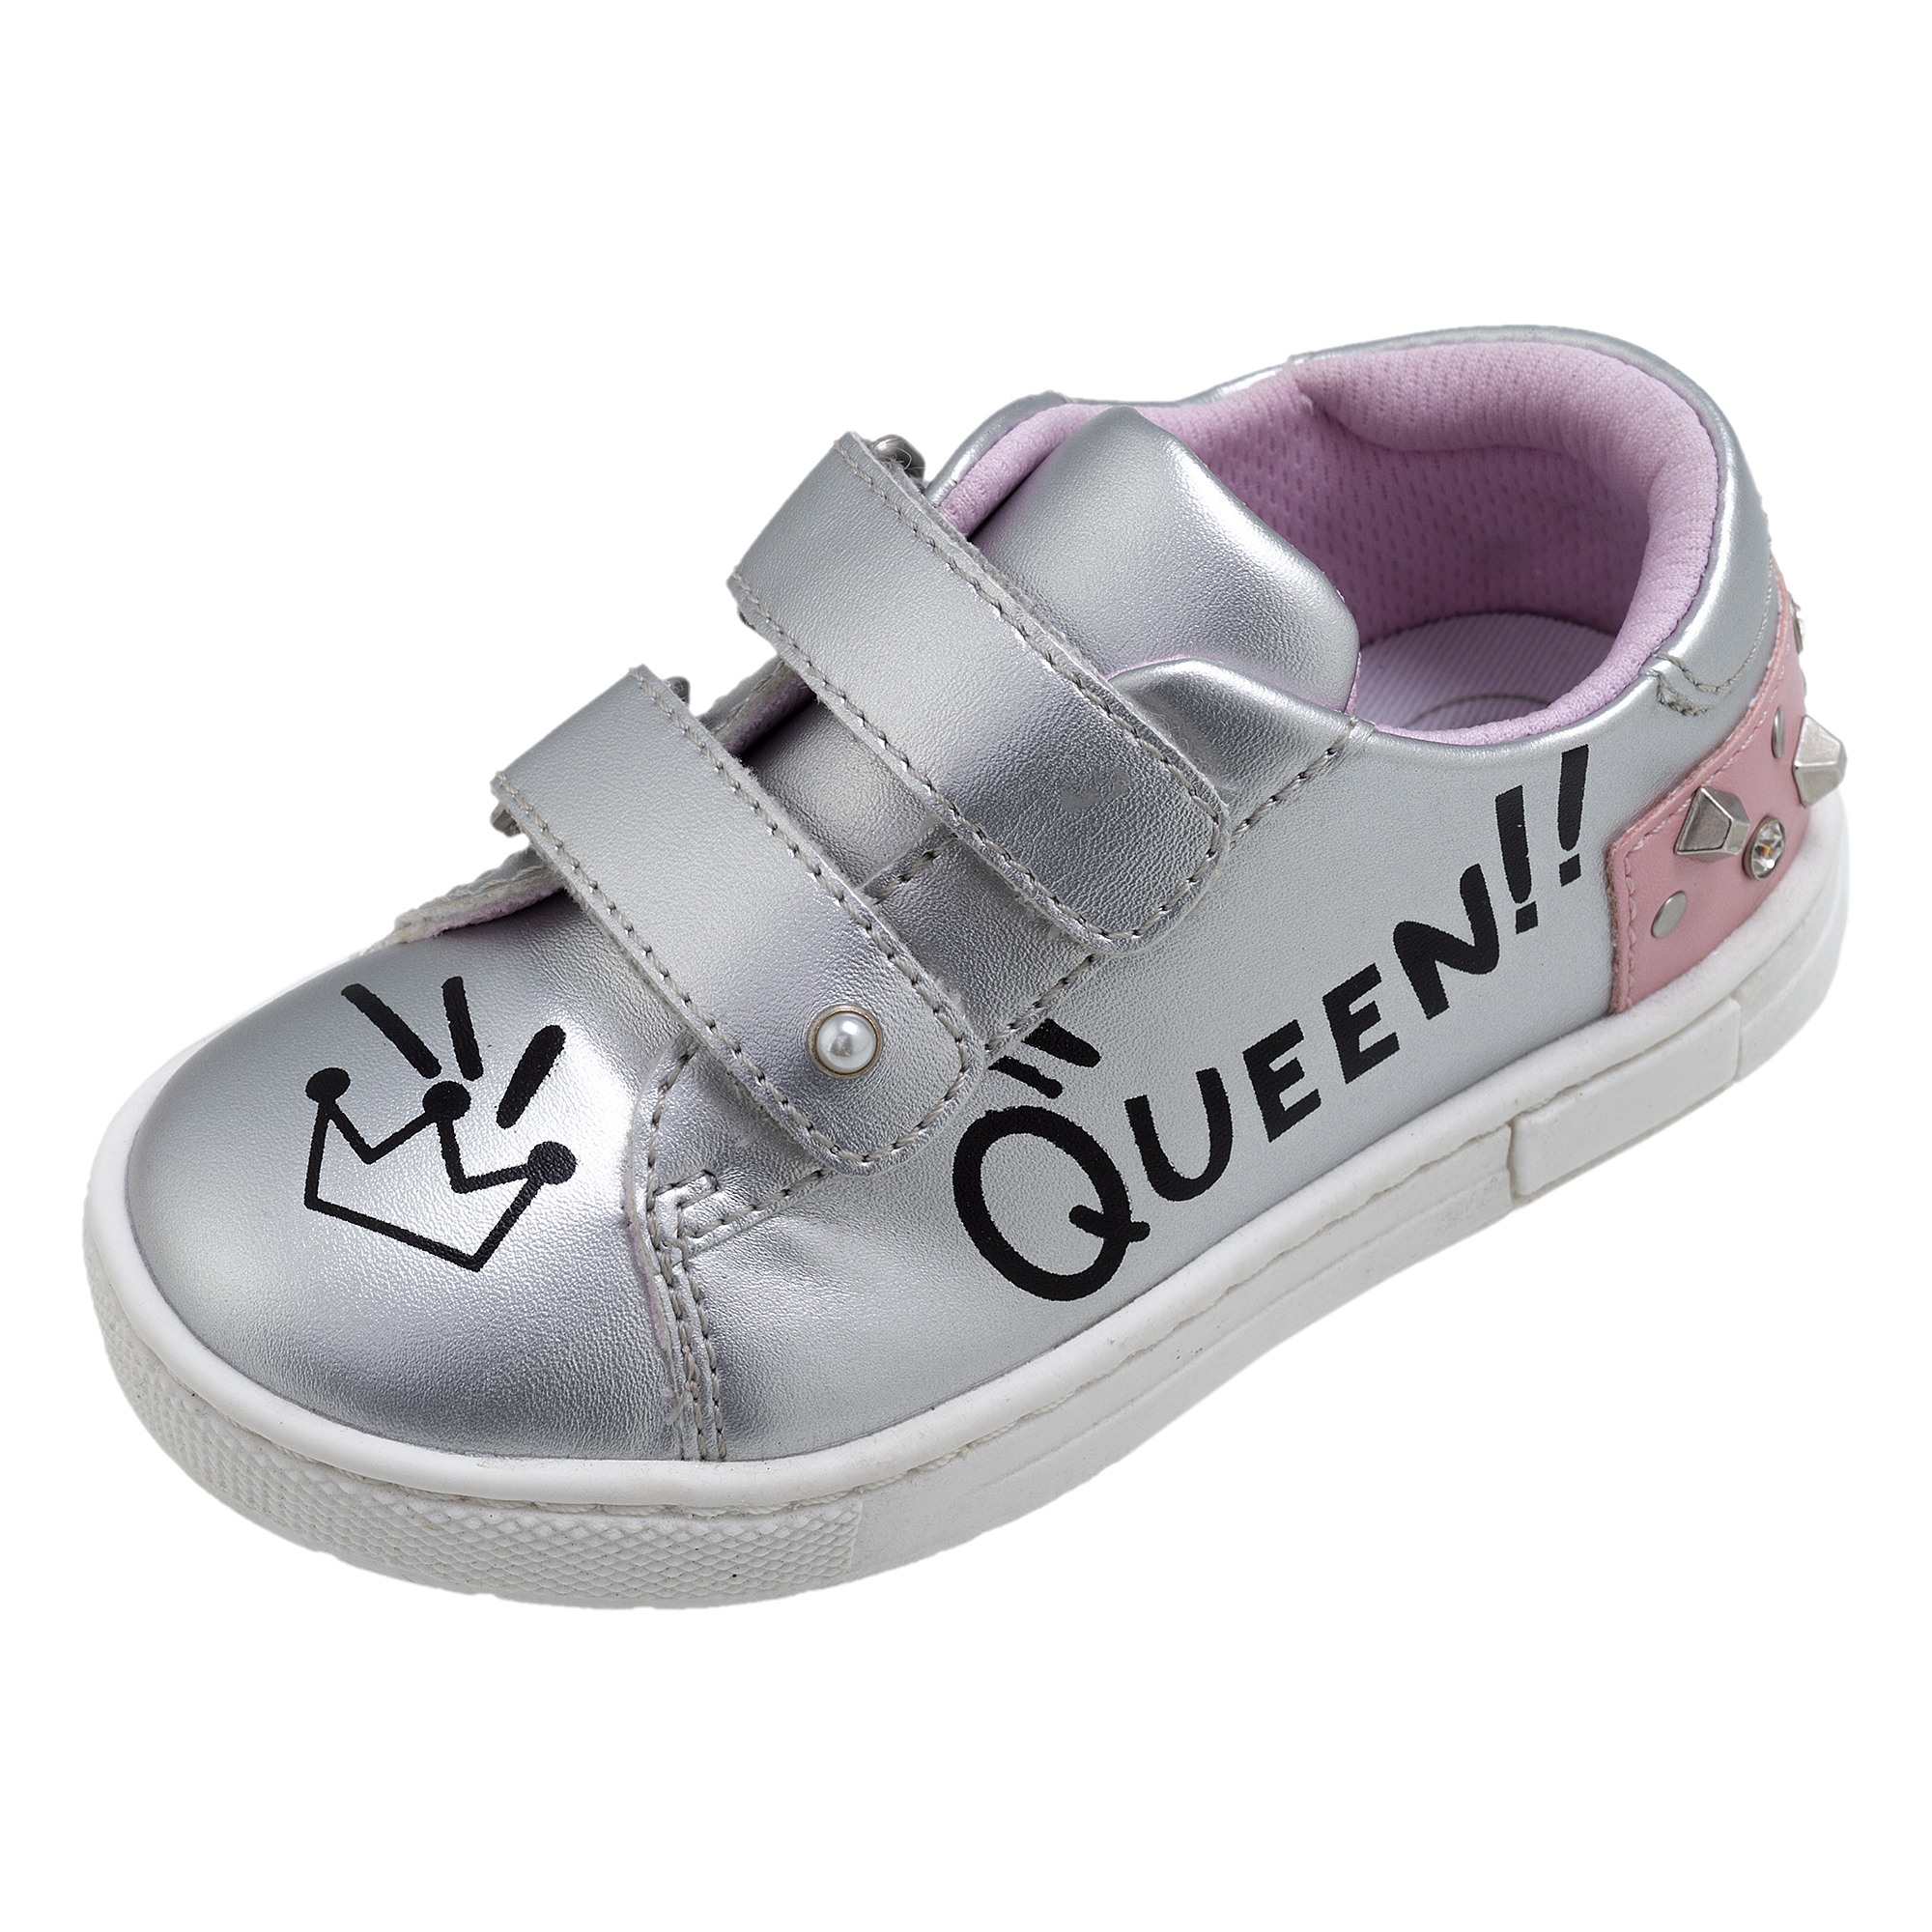 Pantofi copii Chicco Cloris, argintiu cu model, 65488